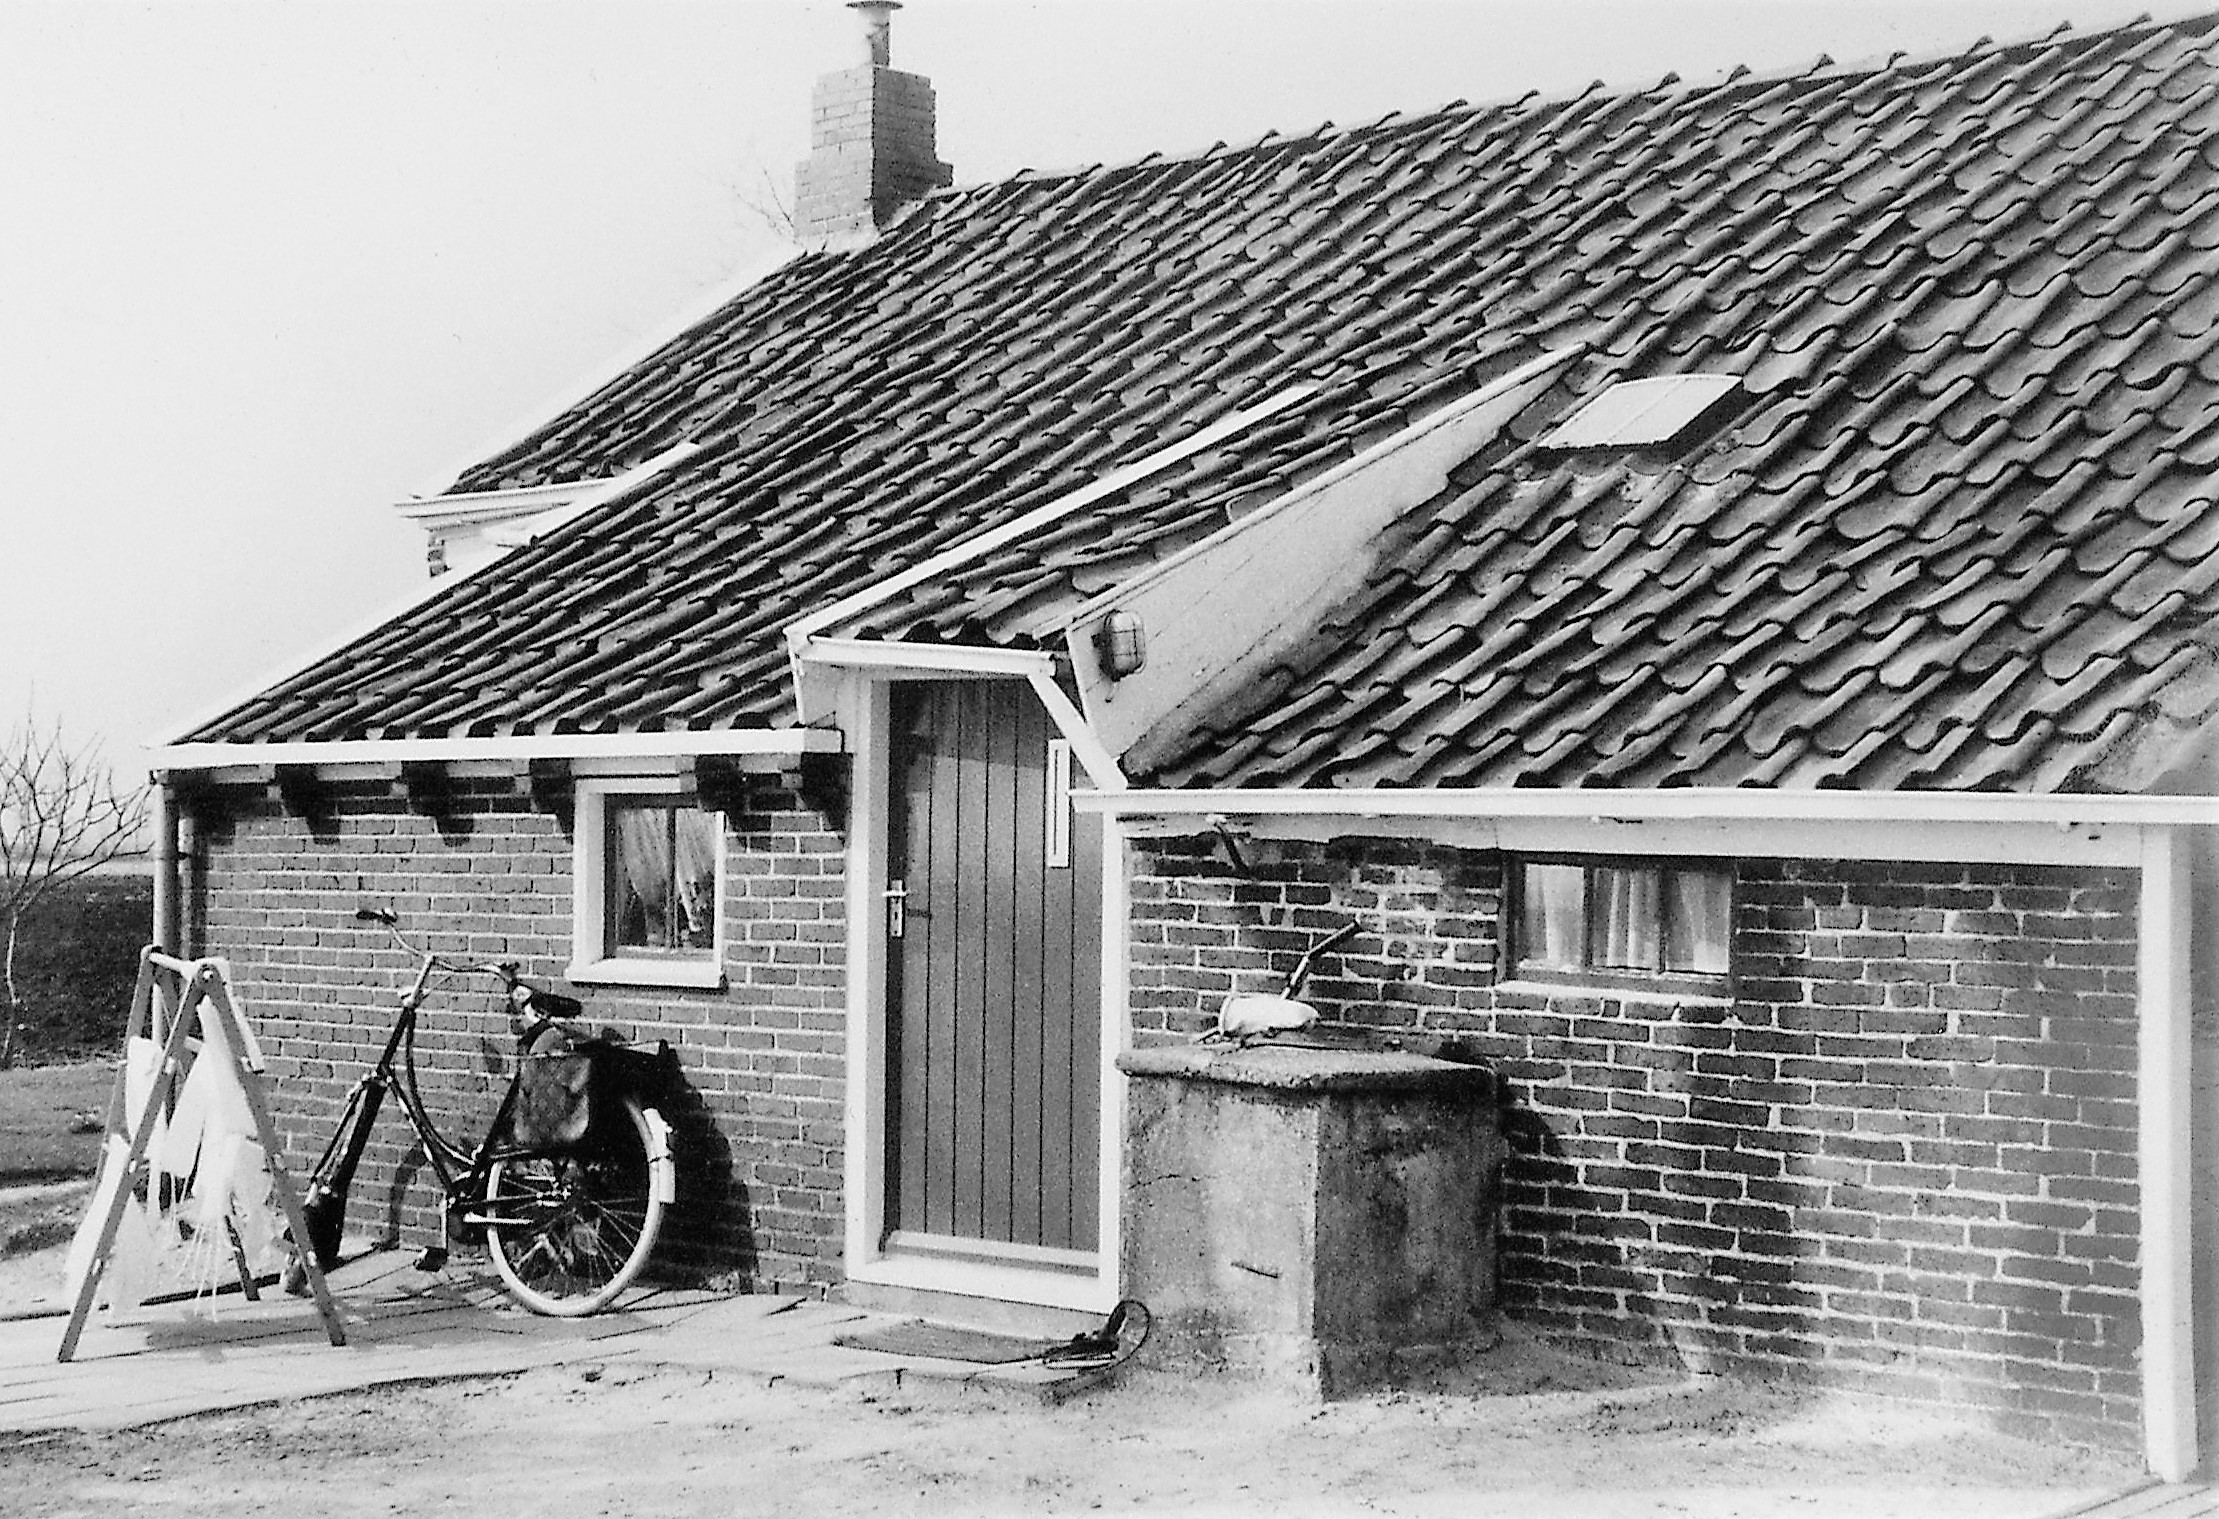 Woning van Brinkman aan de Zuiderweg (Kikkerpolder) met een mooie regenbak. Foto: ©J.P. Koers, Scheemda.